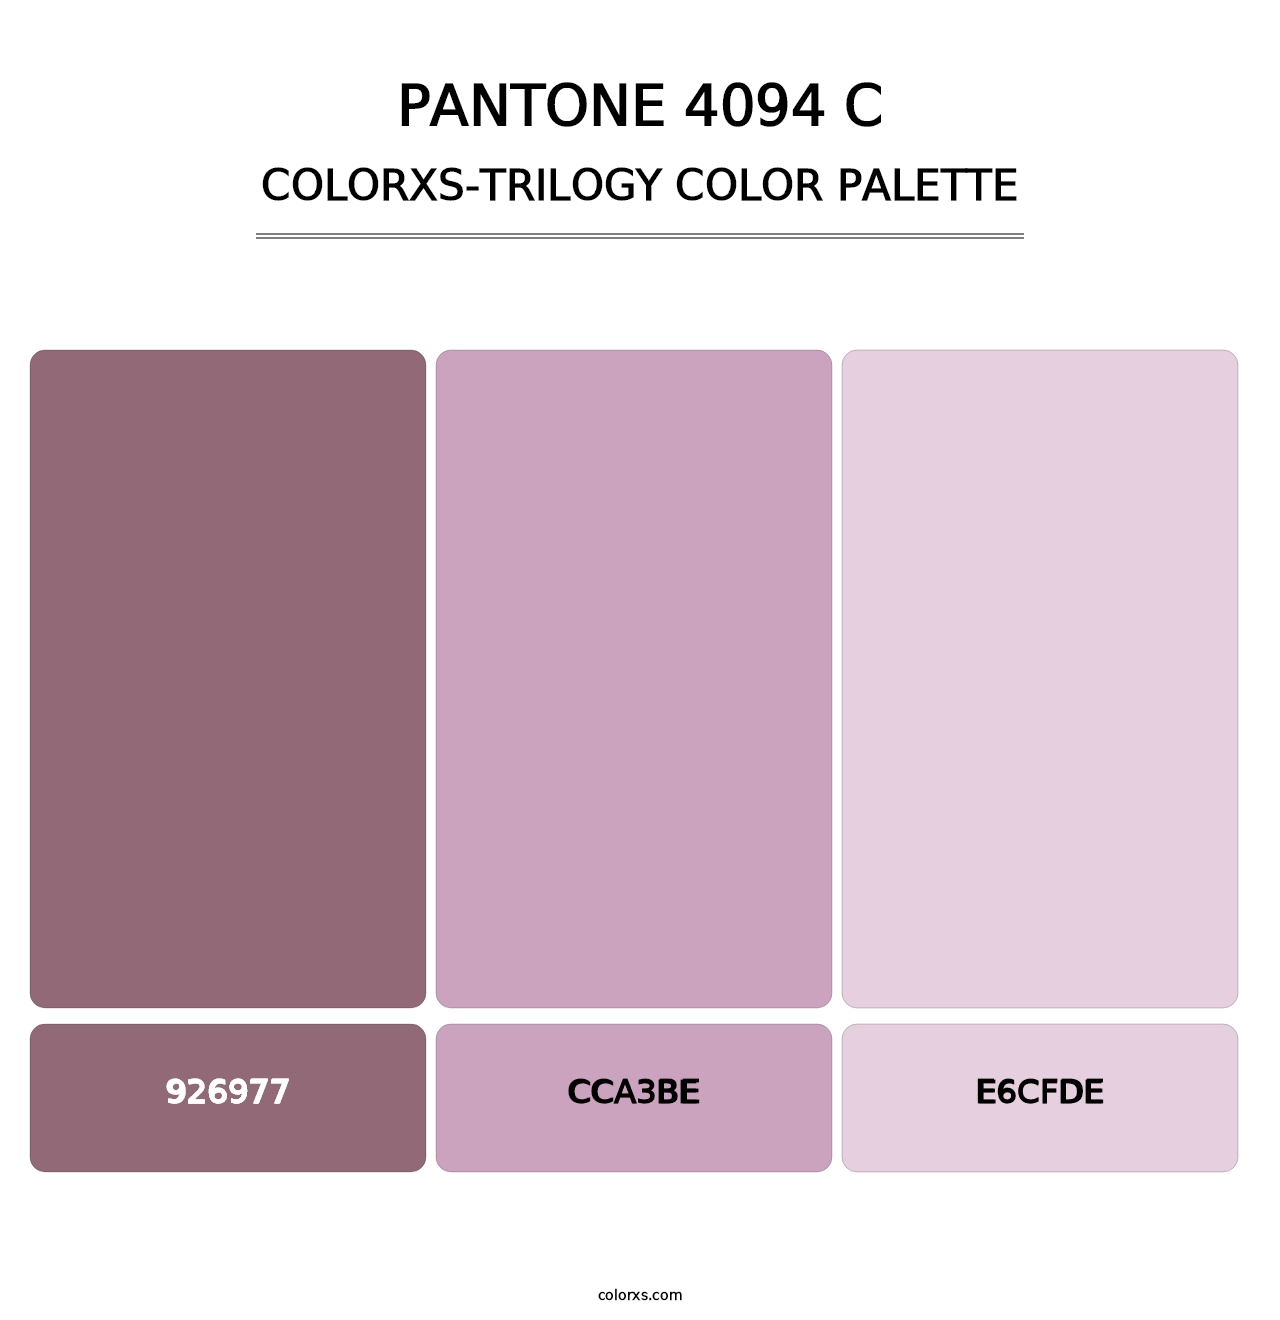 PANTONE 4094 C - Colorxs Trilogy Palette